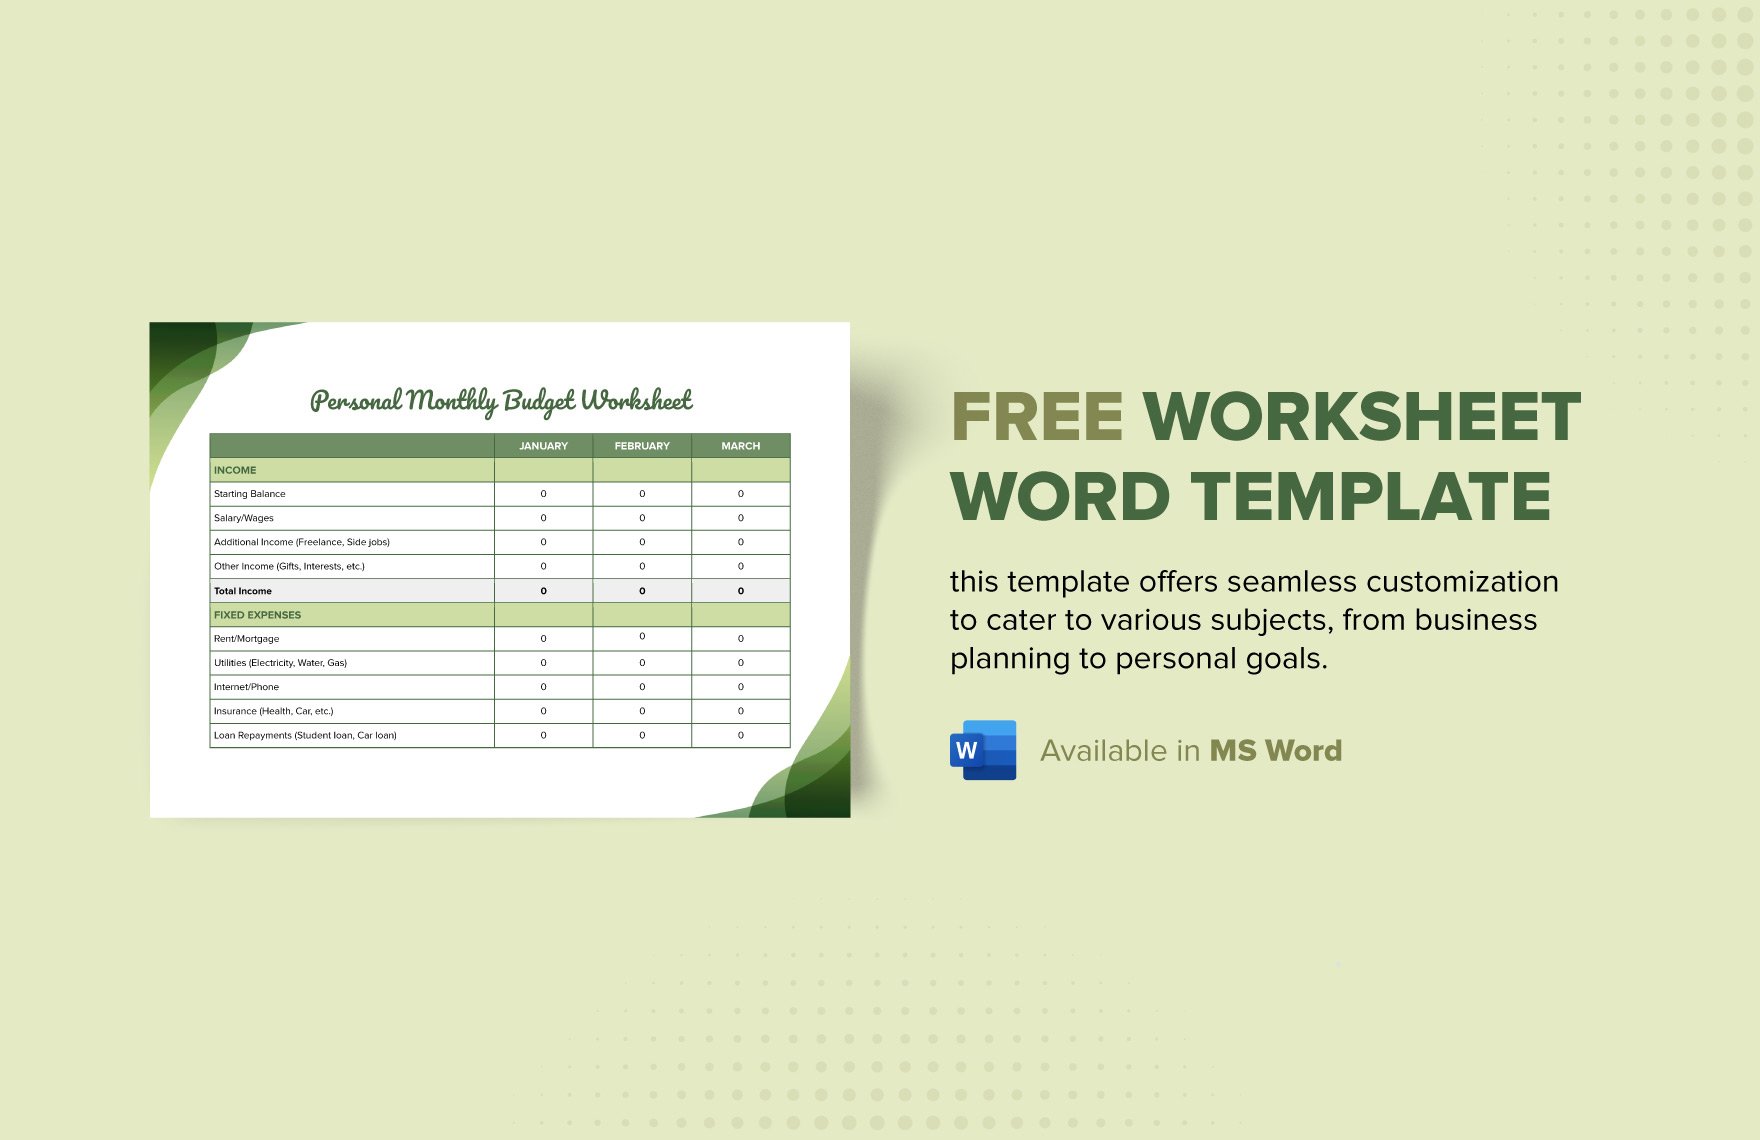 Free Worksheet Word Template